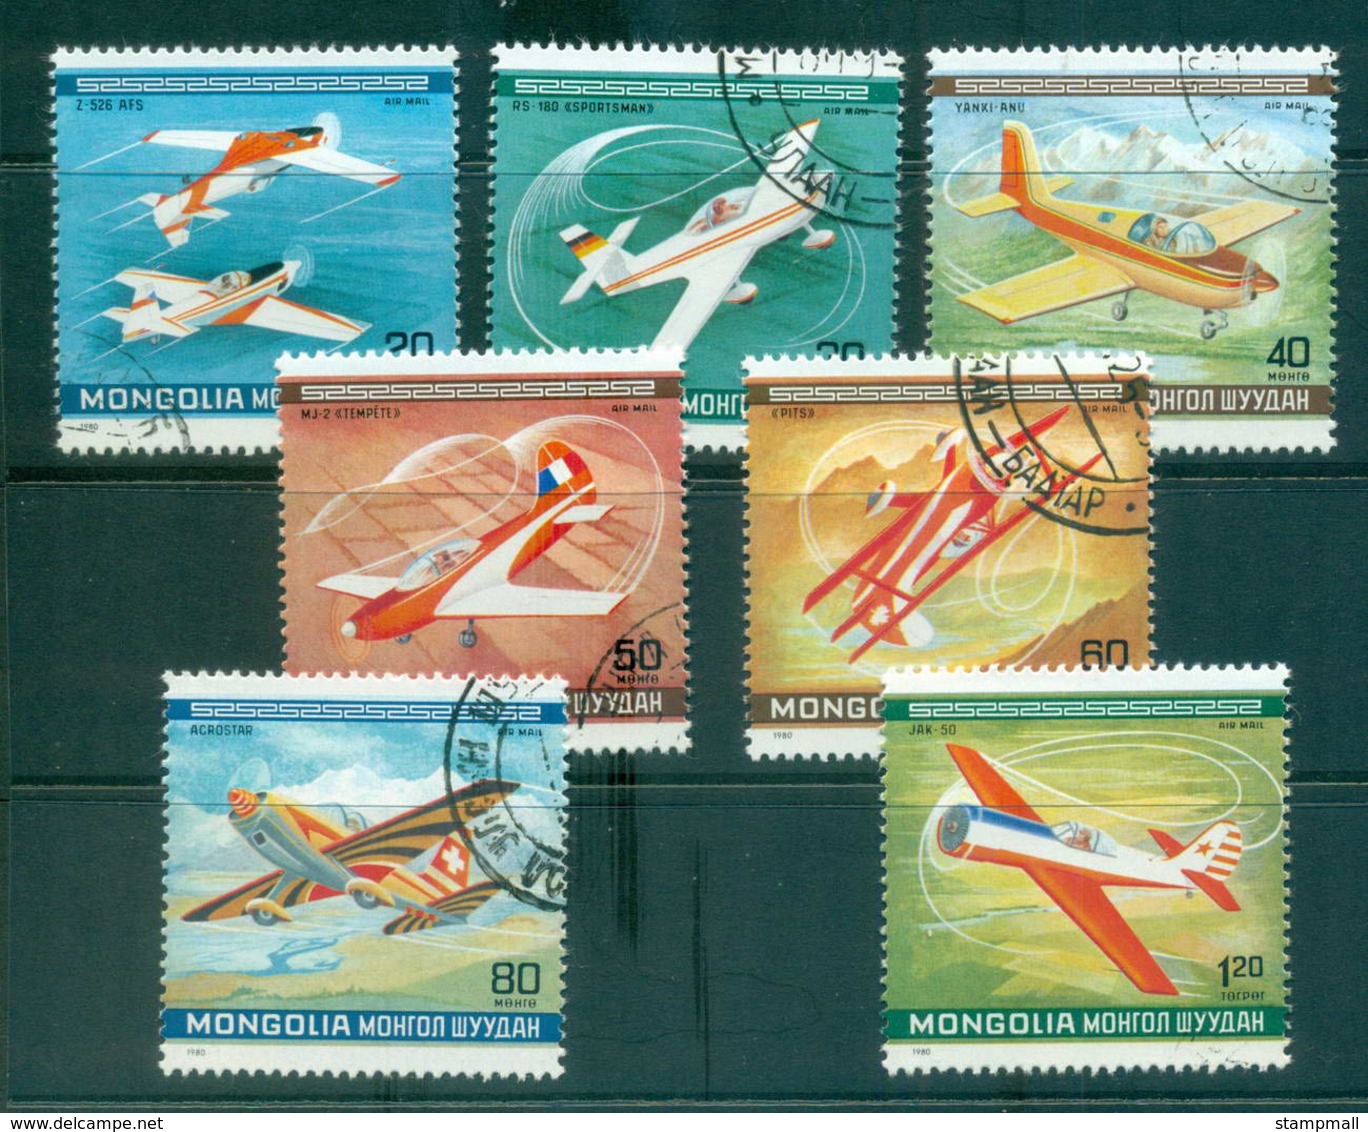 Mongolia 1980 Planes, Acrobatics CTO Lot56017 - Mongolia